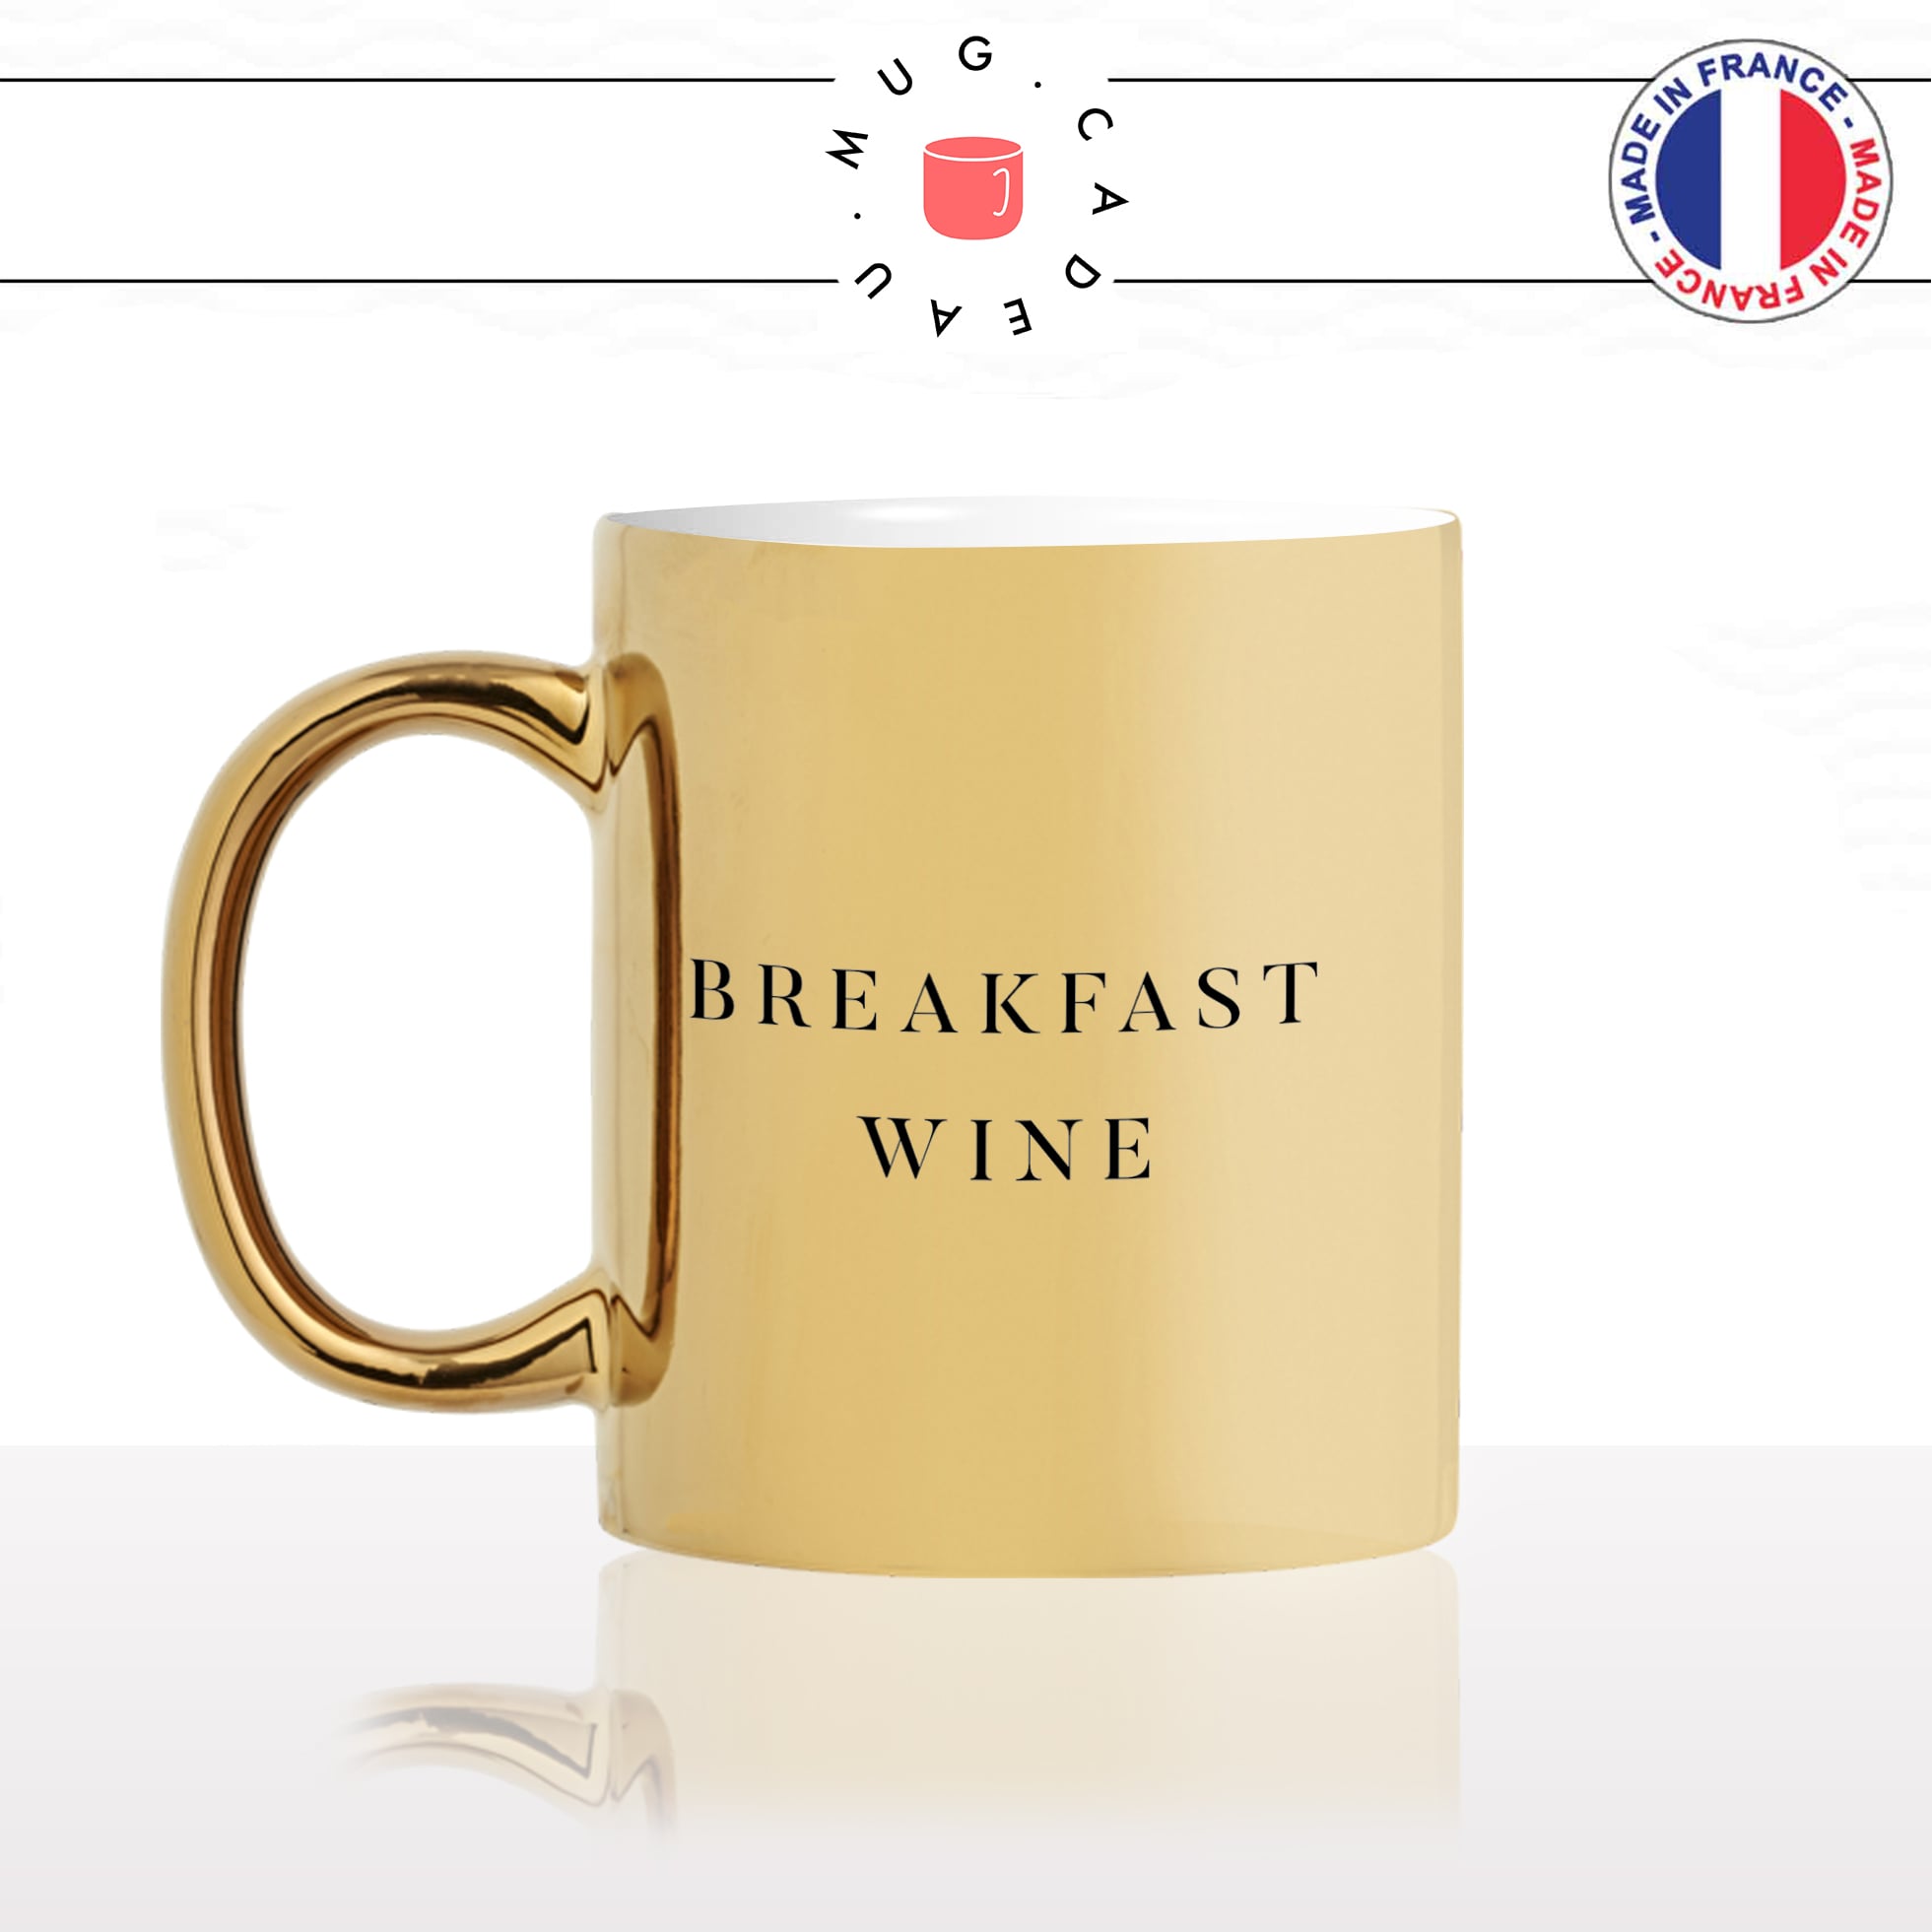 mug-tasse-doré-or-gold-breakfast-wine-vin-petit-déjeuné-croissant-collegues-travail-drole-cool-humour-fun-idée-cadeau-personnalisé-café-thé-min